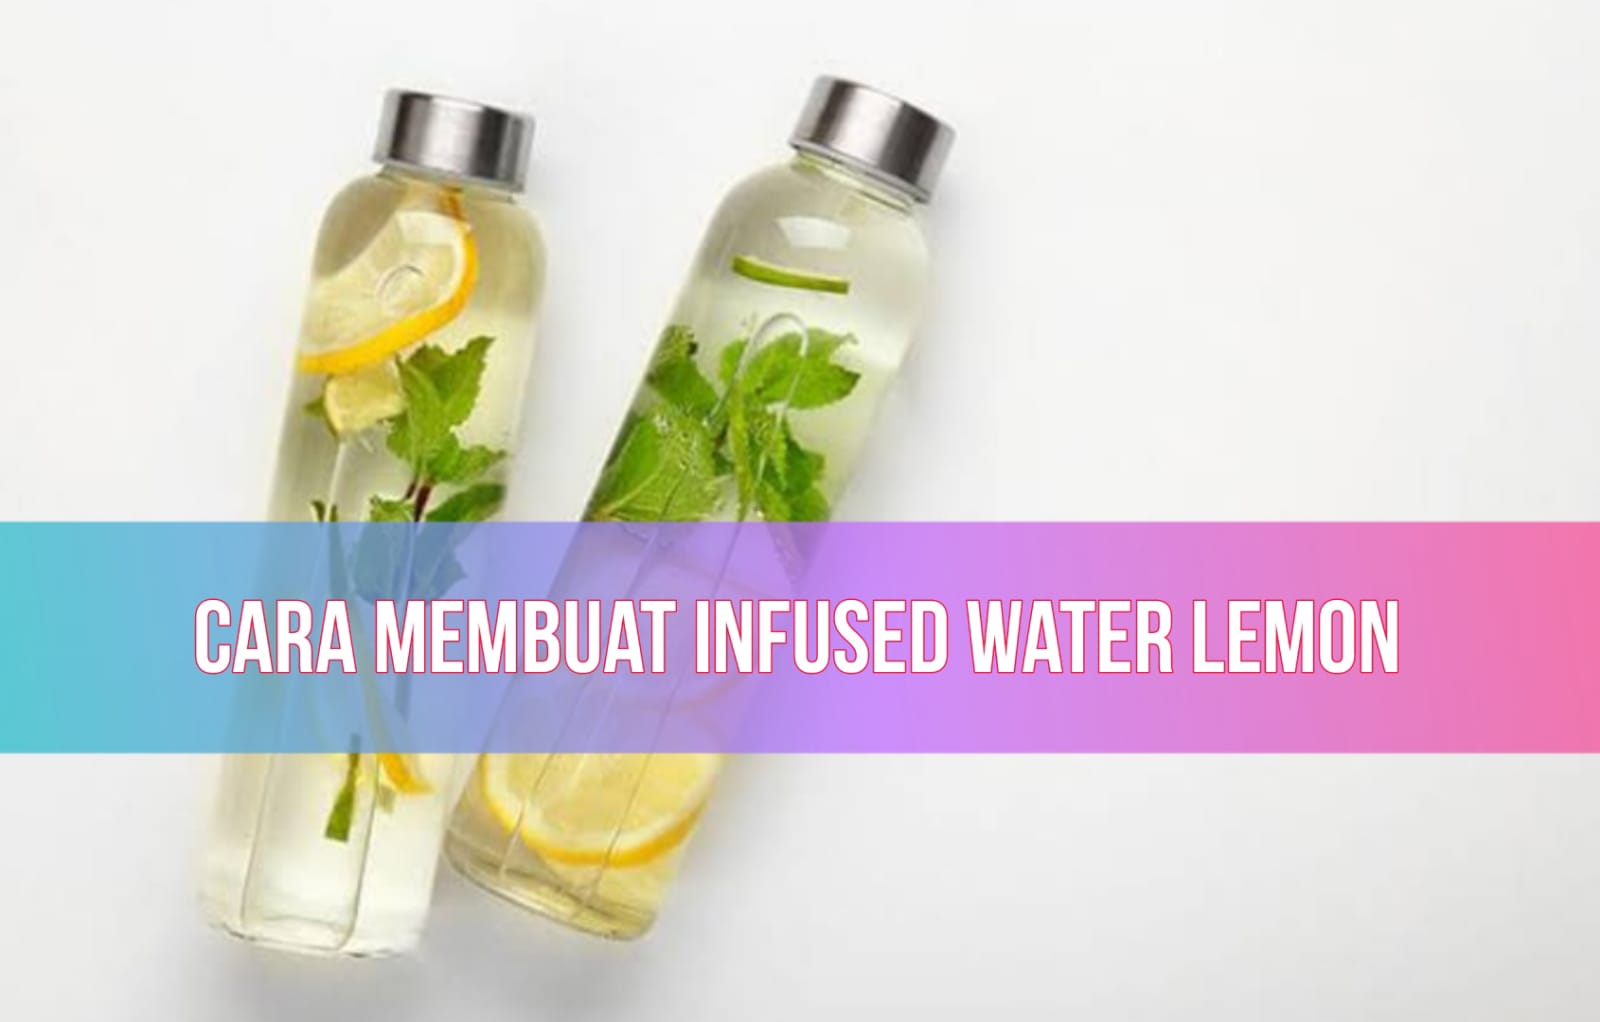 Cara Membuat Infused Water Lemon yang Segar dan Menyehatkan, Cukup dengan 4 Bahan!